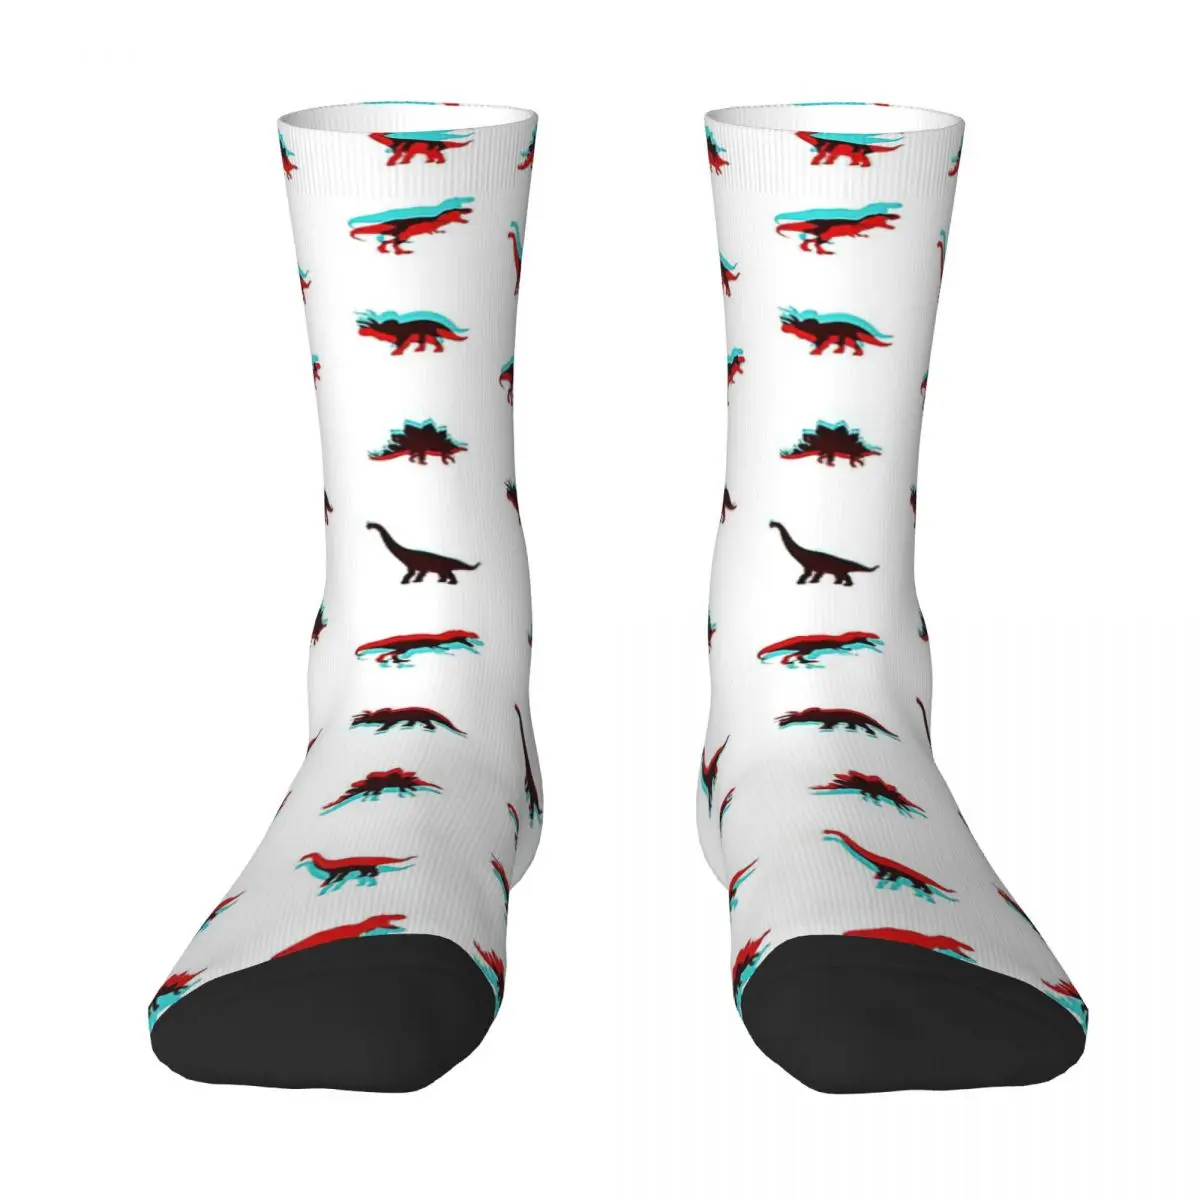 Dinosaur Adult Socks Unisex socks,men Socks women Socks dinosaur jr beyond lp